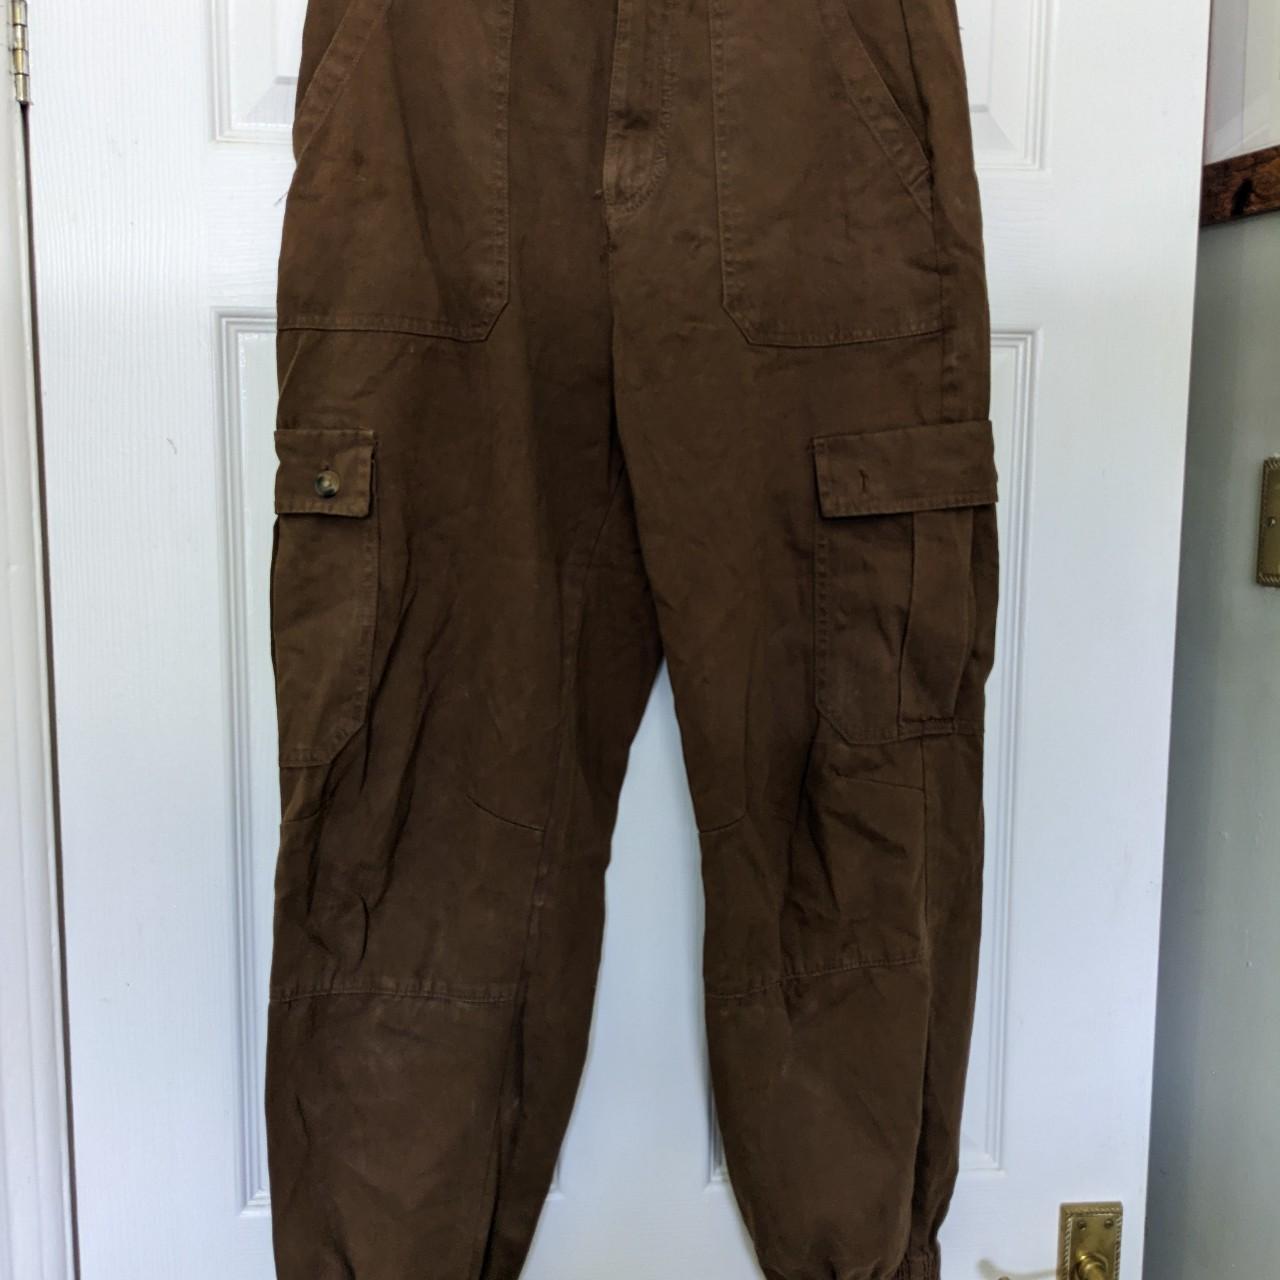 Pull & Bear cargo pants in brown. Women's 10-12. - Depop